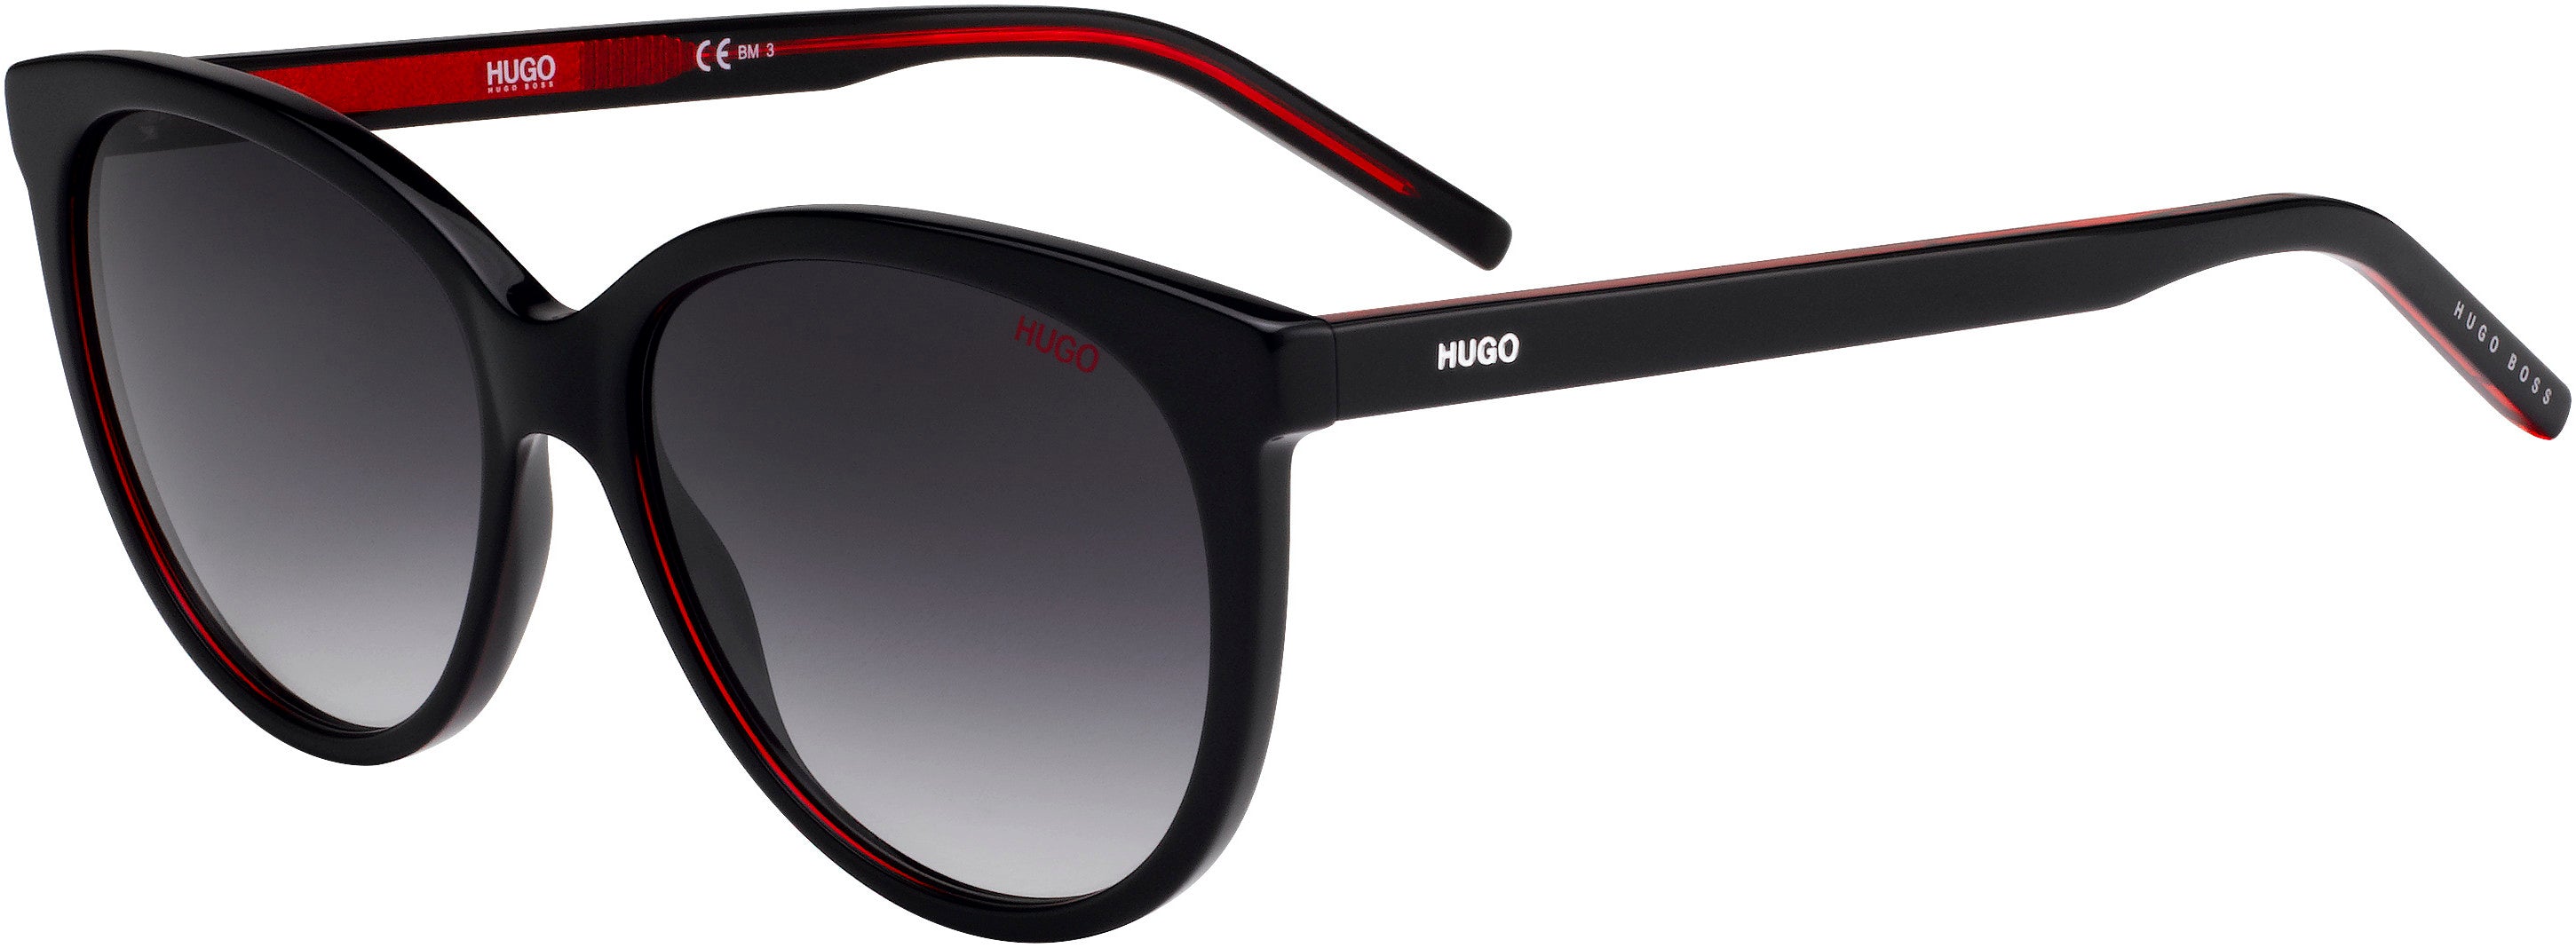 Hugo (hug) Hugo 1006/S Cat Eye/butterfly Sunglasses 0OIT-0OIT  Black Redgd (9O Dark Gray Gradient)